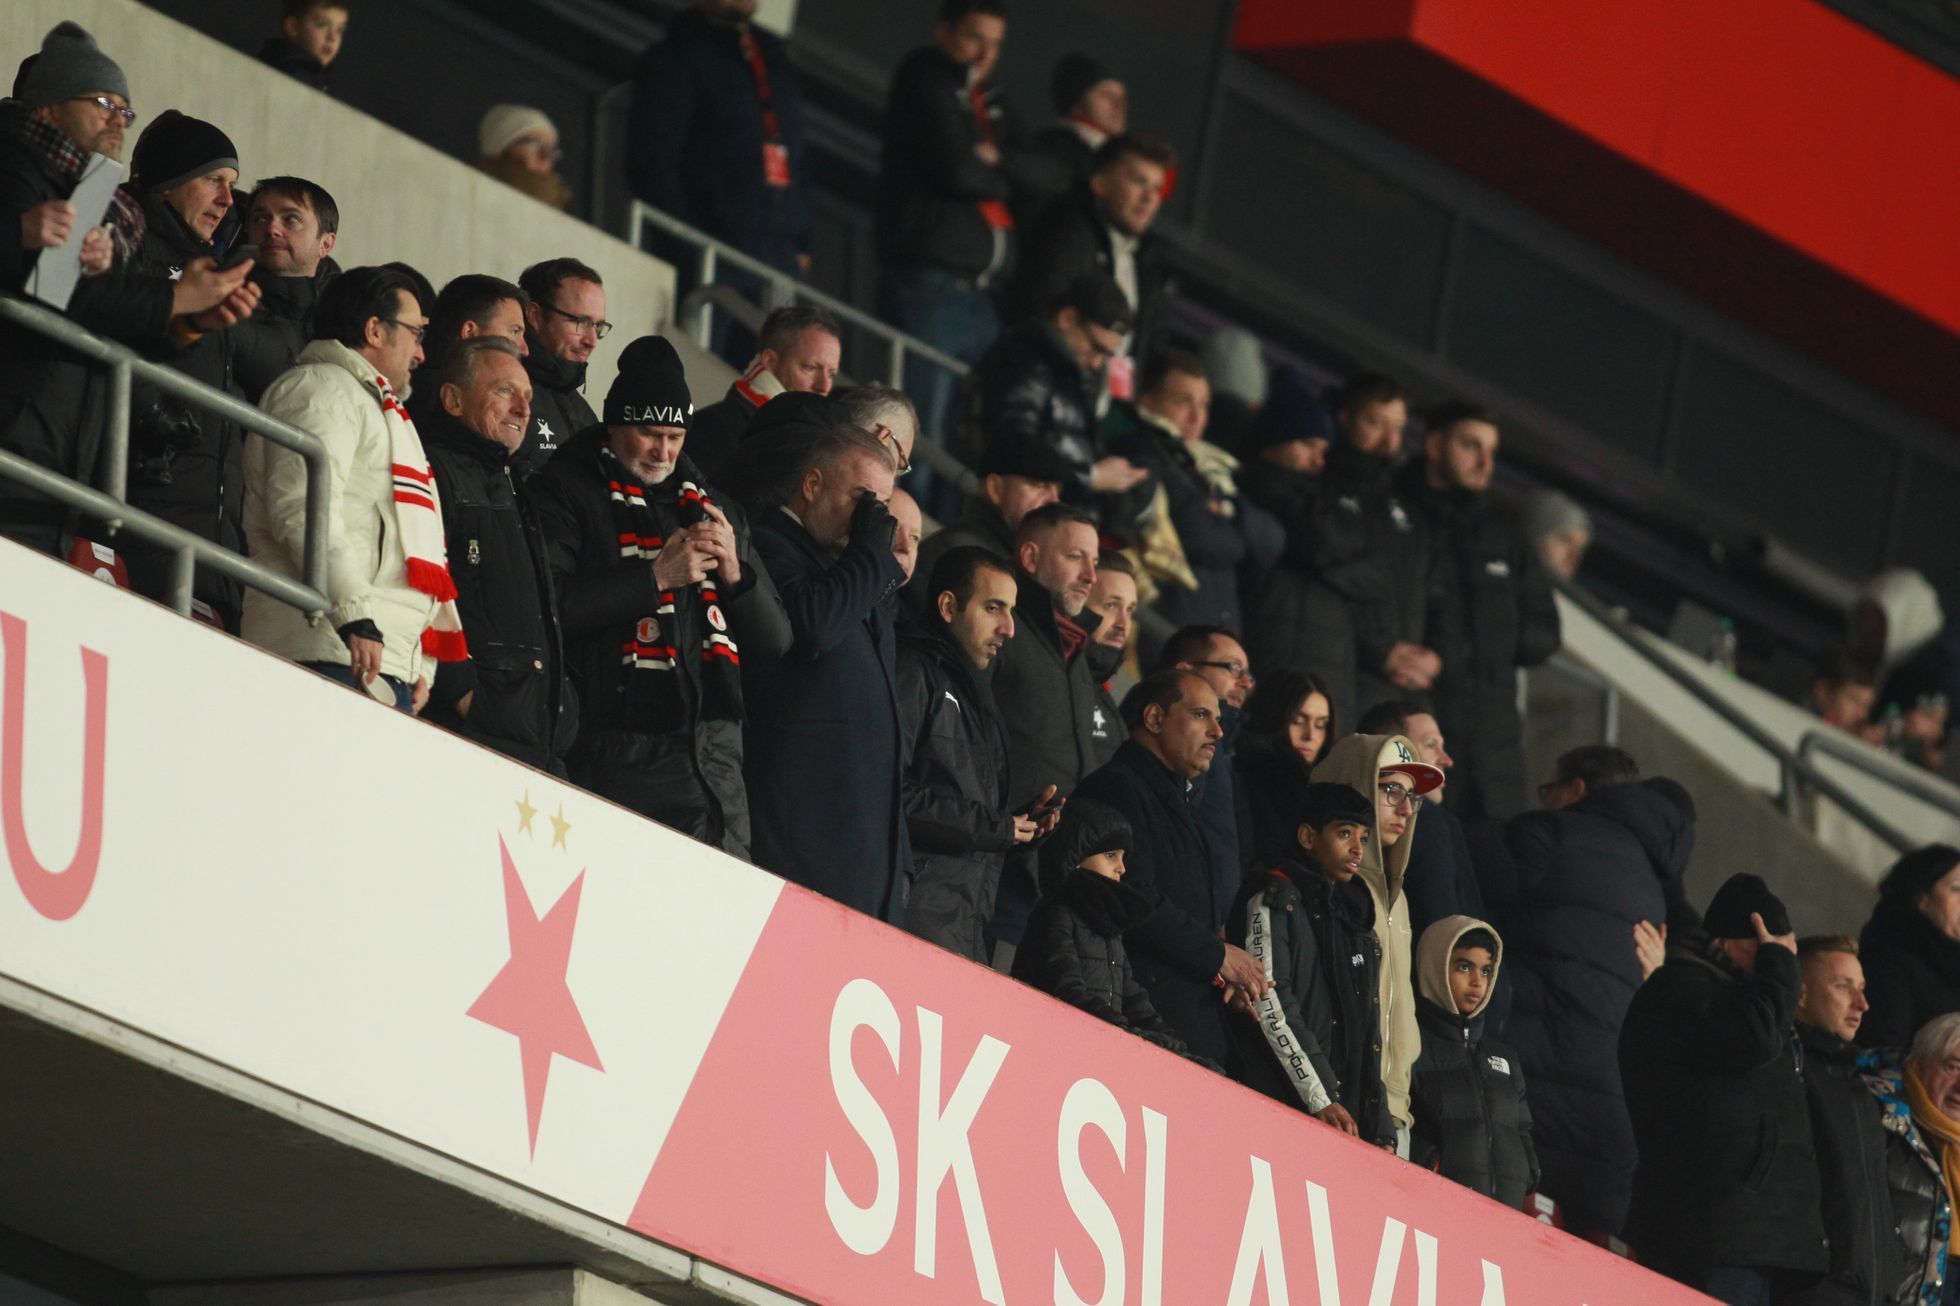 Slavia - Plzeň, Fortuna:Liga